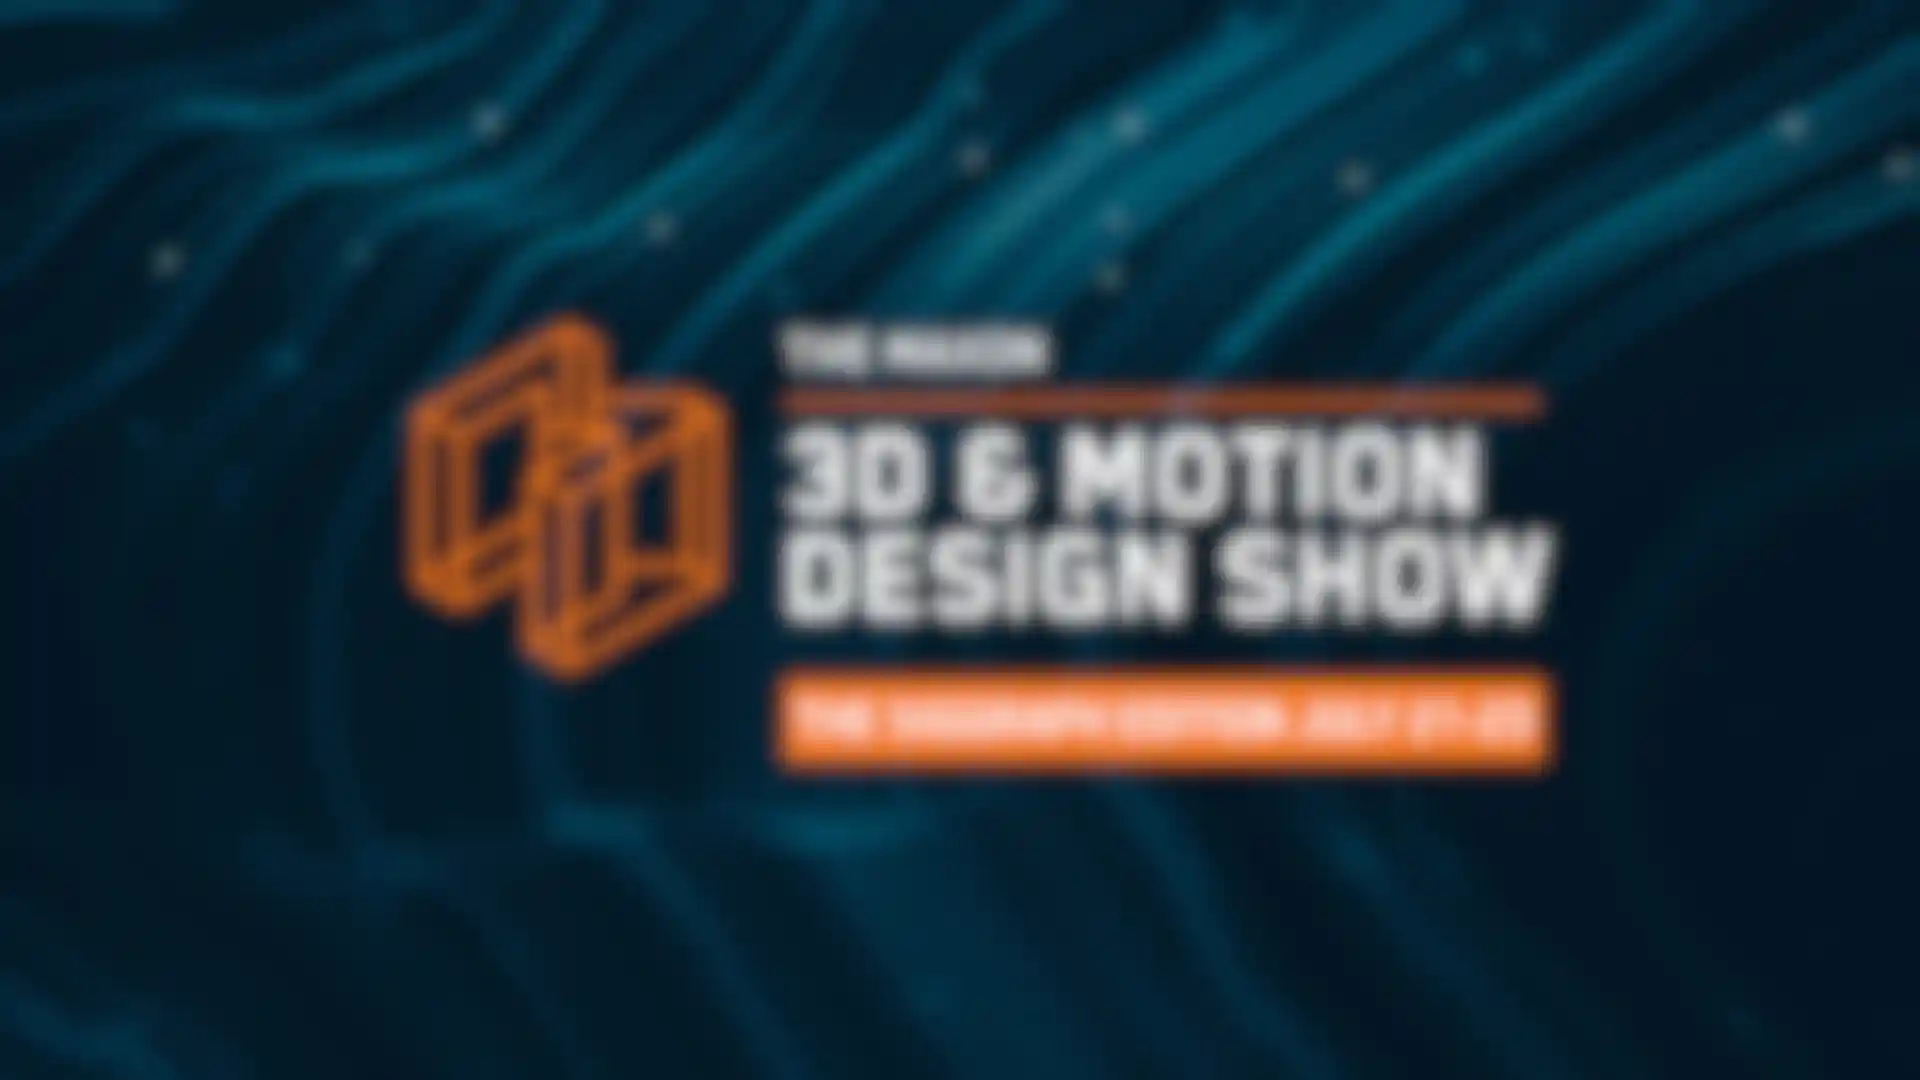 El Show de 3D y Motion Design de Maxon para Siggraph Donde Presentará la Alineación All-Star image